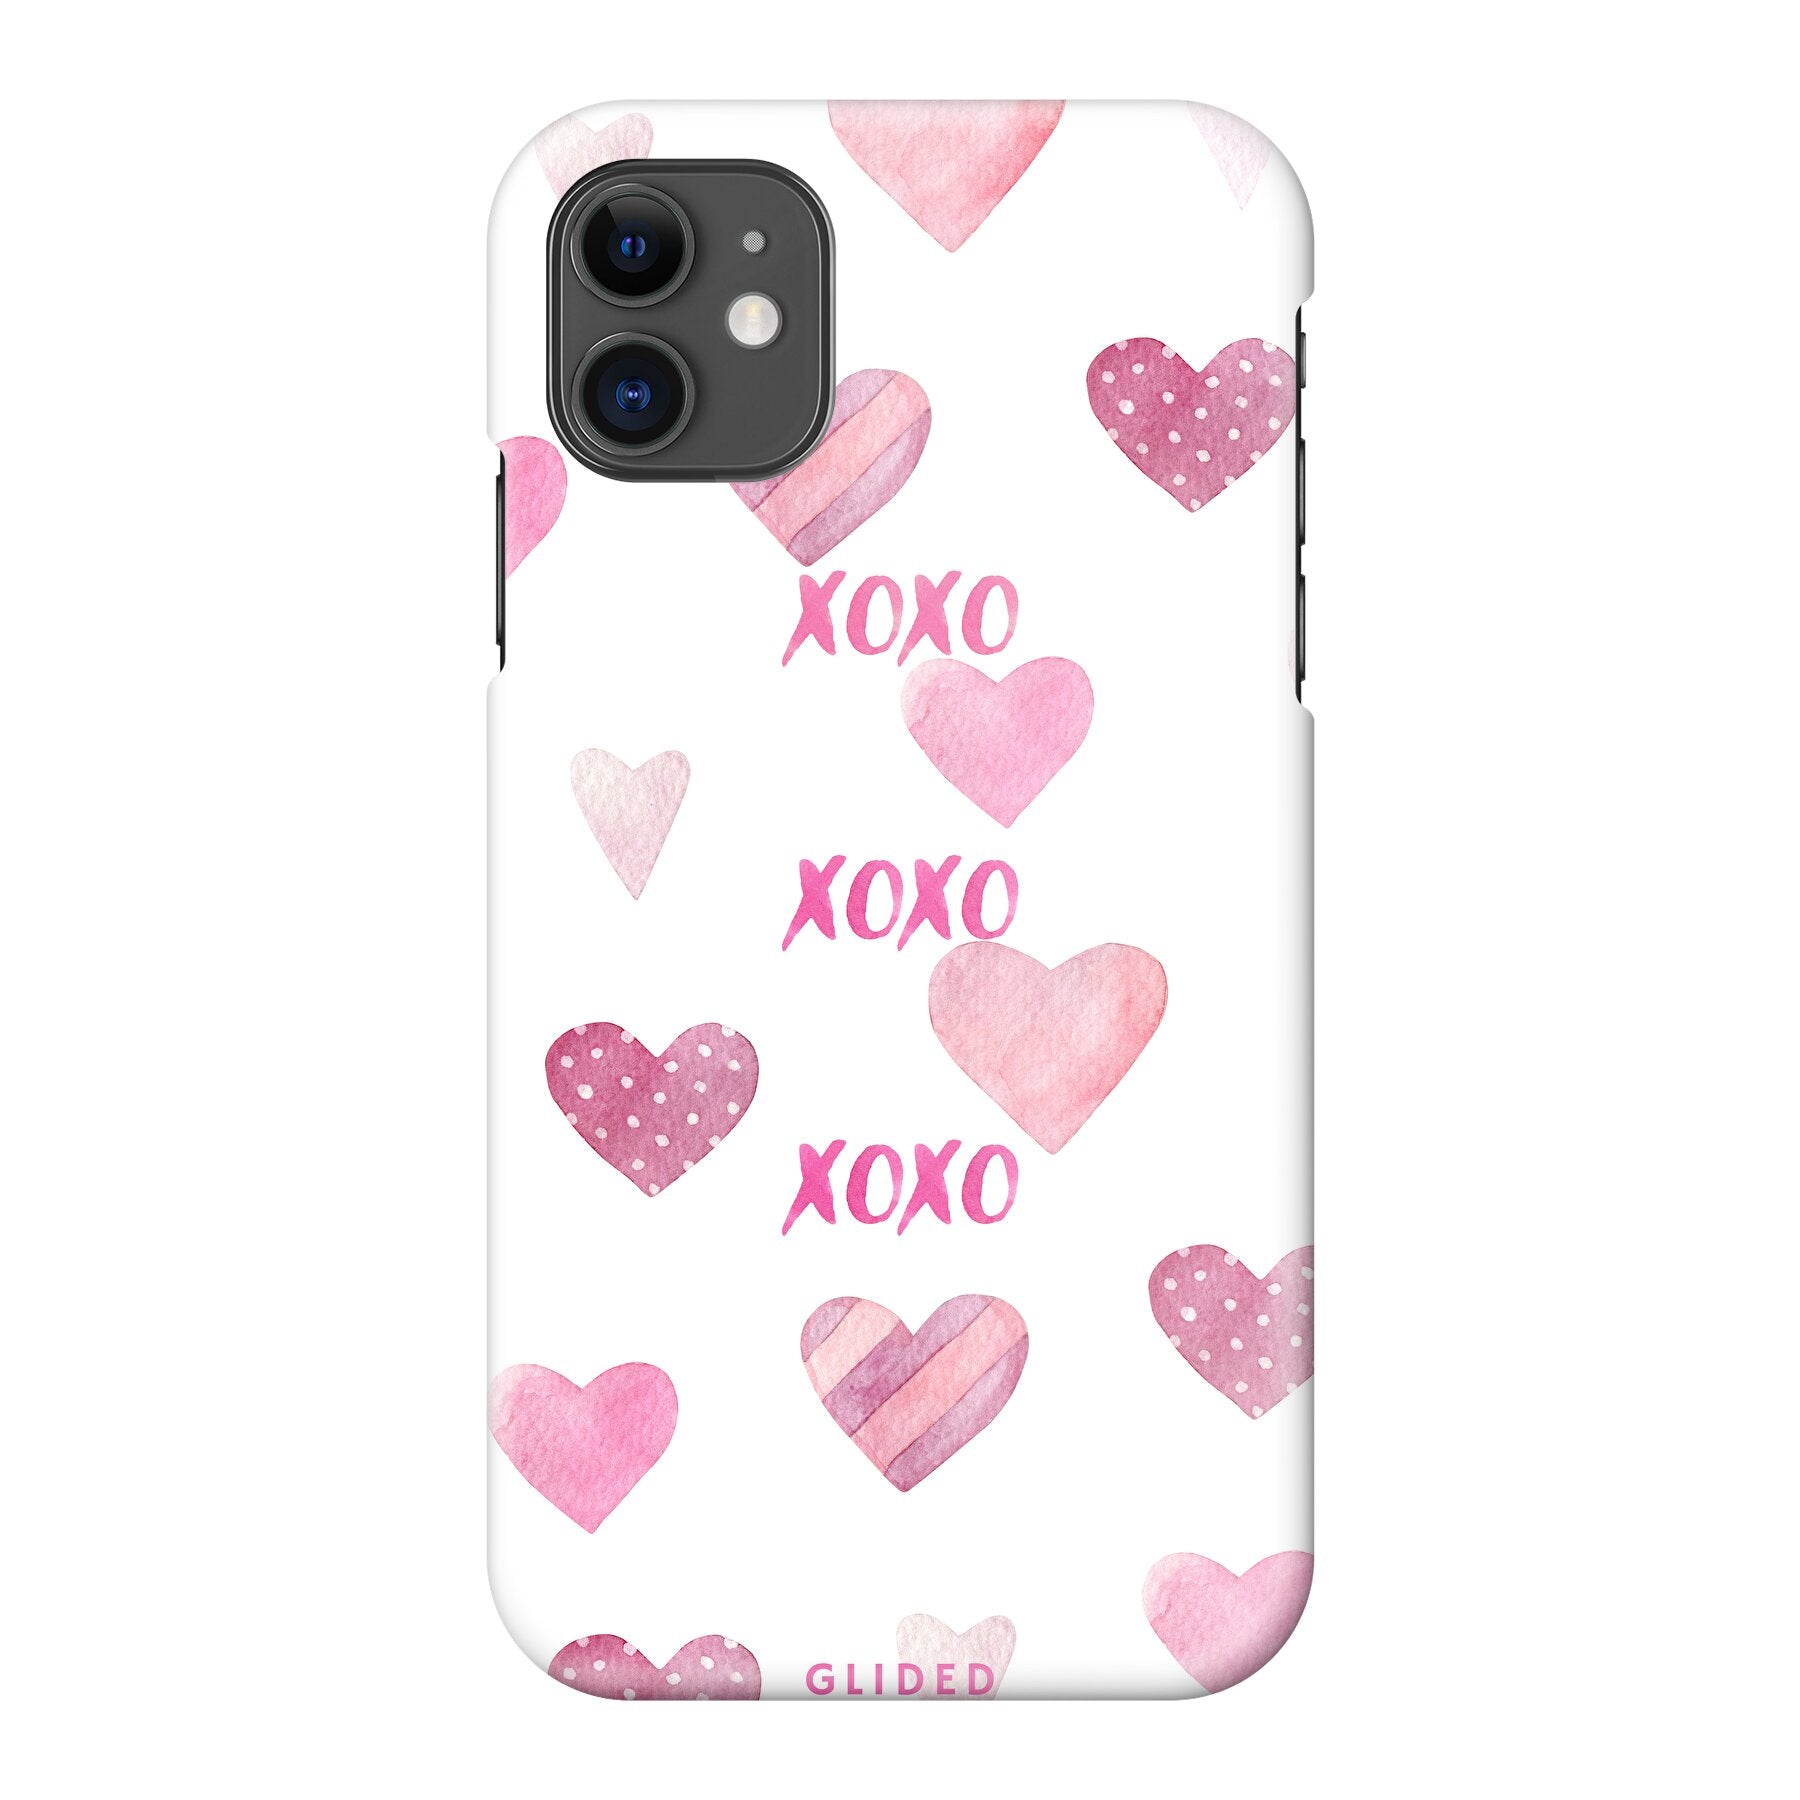 Xoxo - iPhone 11 - Hard Case